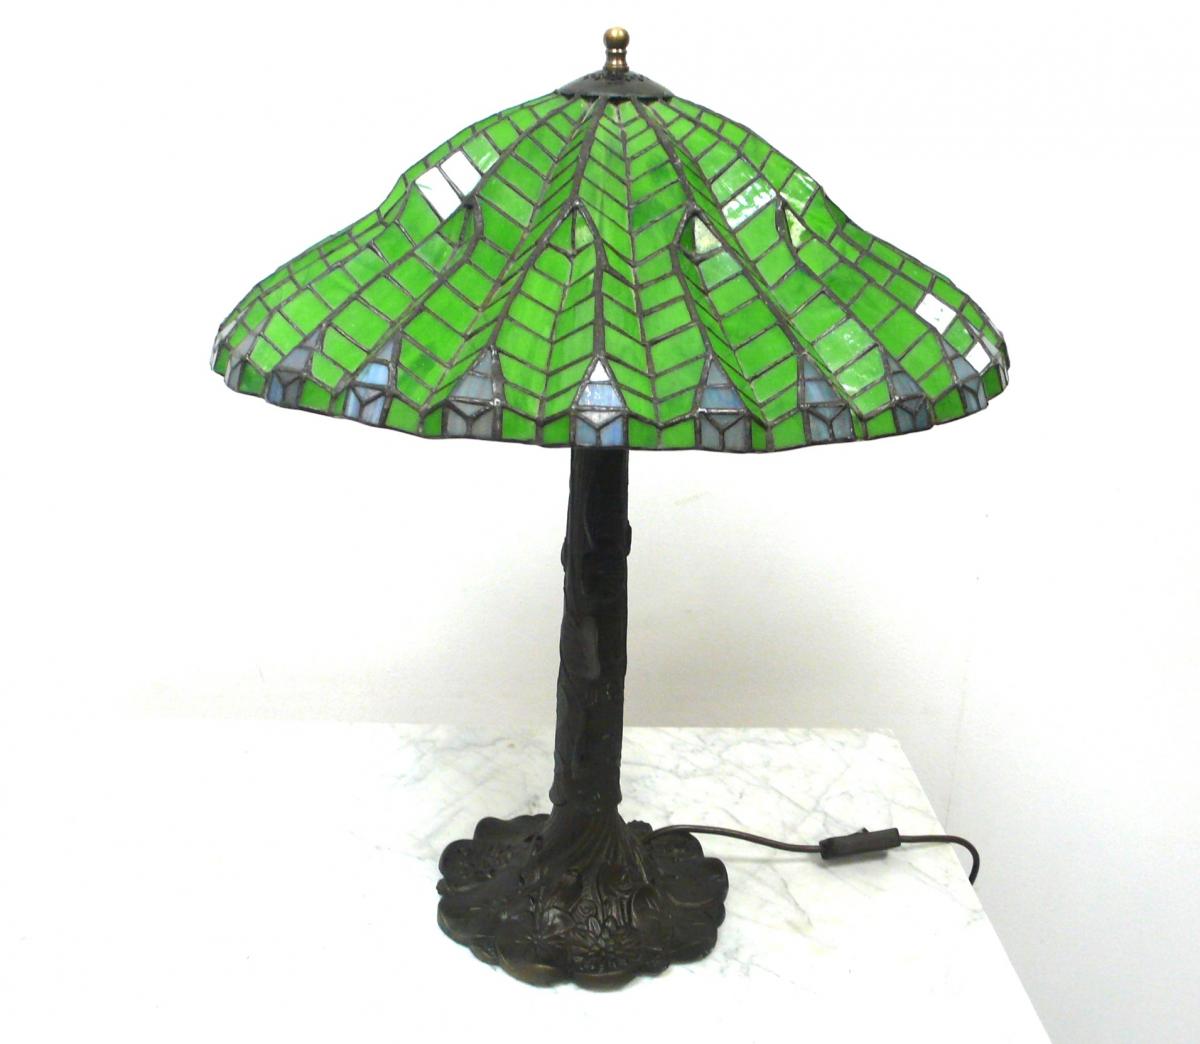 Tiffany Tischlampe Schirm Form Grünes Glas Lotus Leaf Stil, Jugendstil Art, sehr seltene schöne Form 0